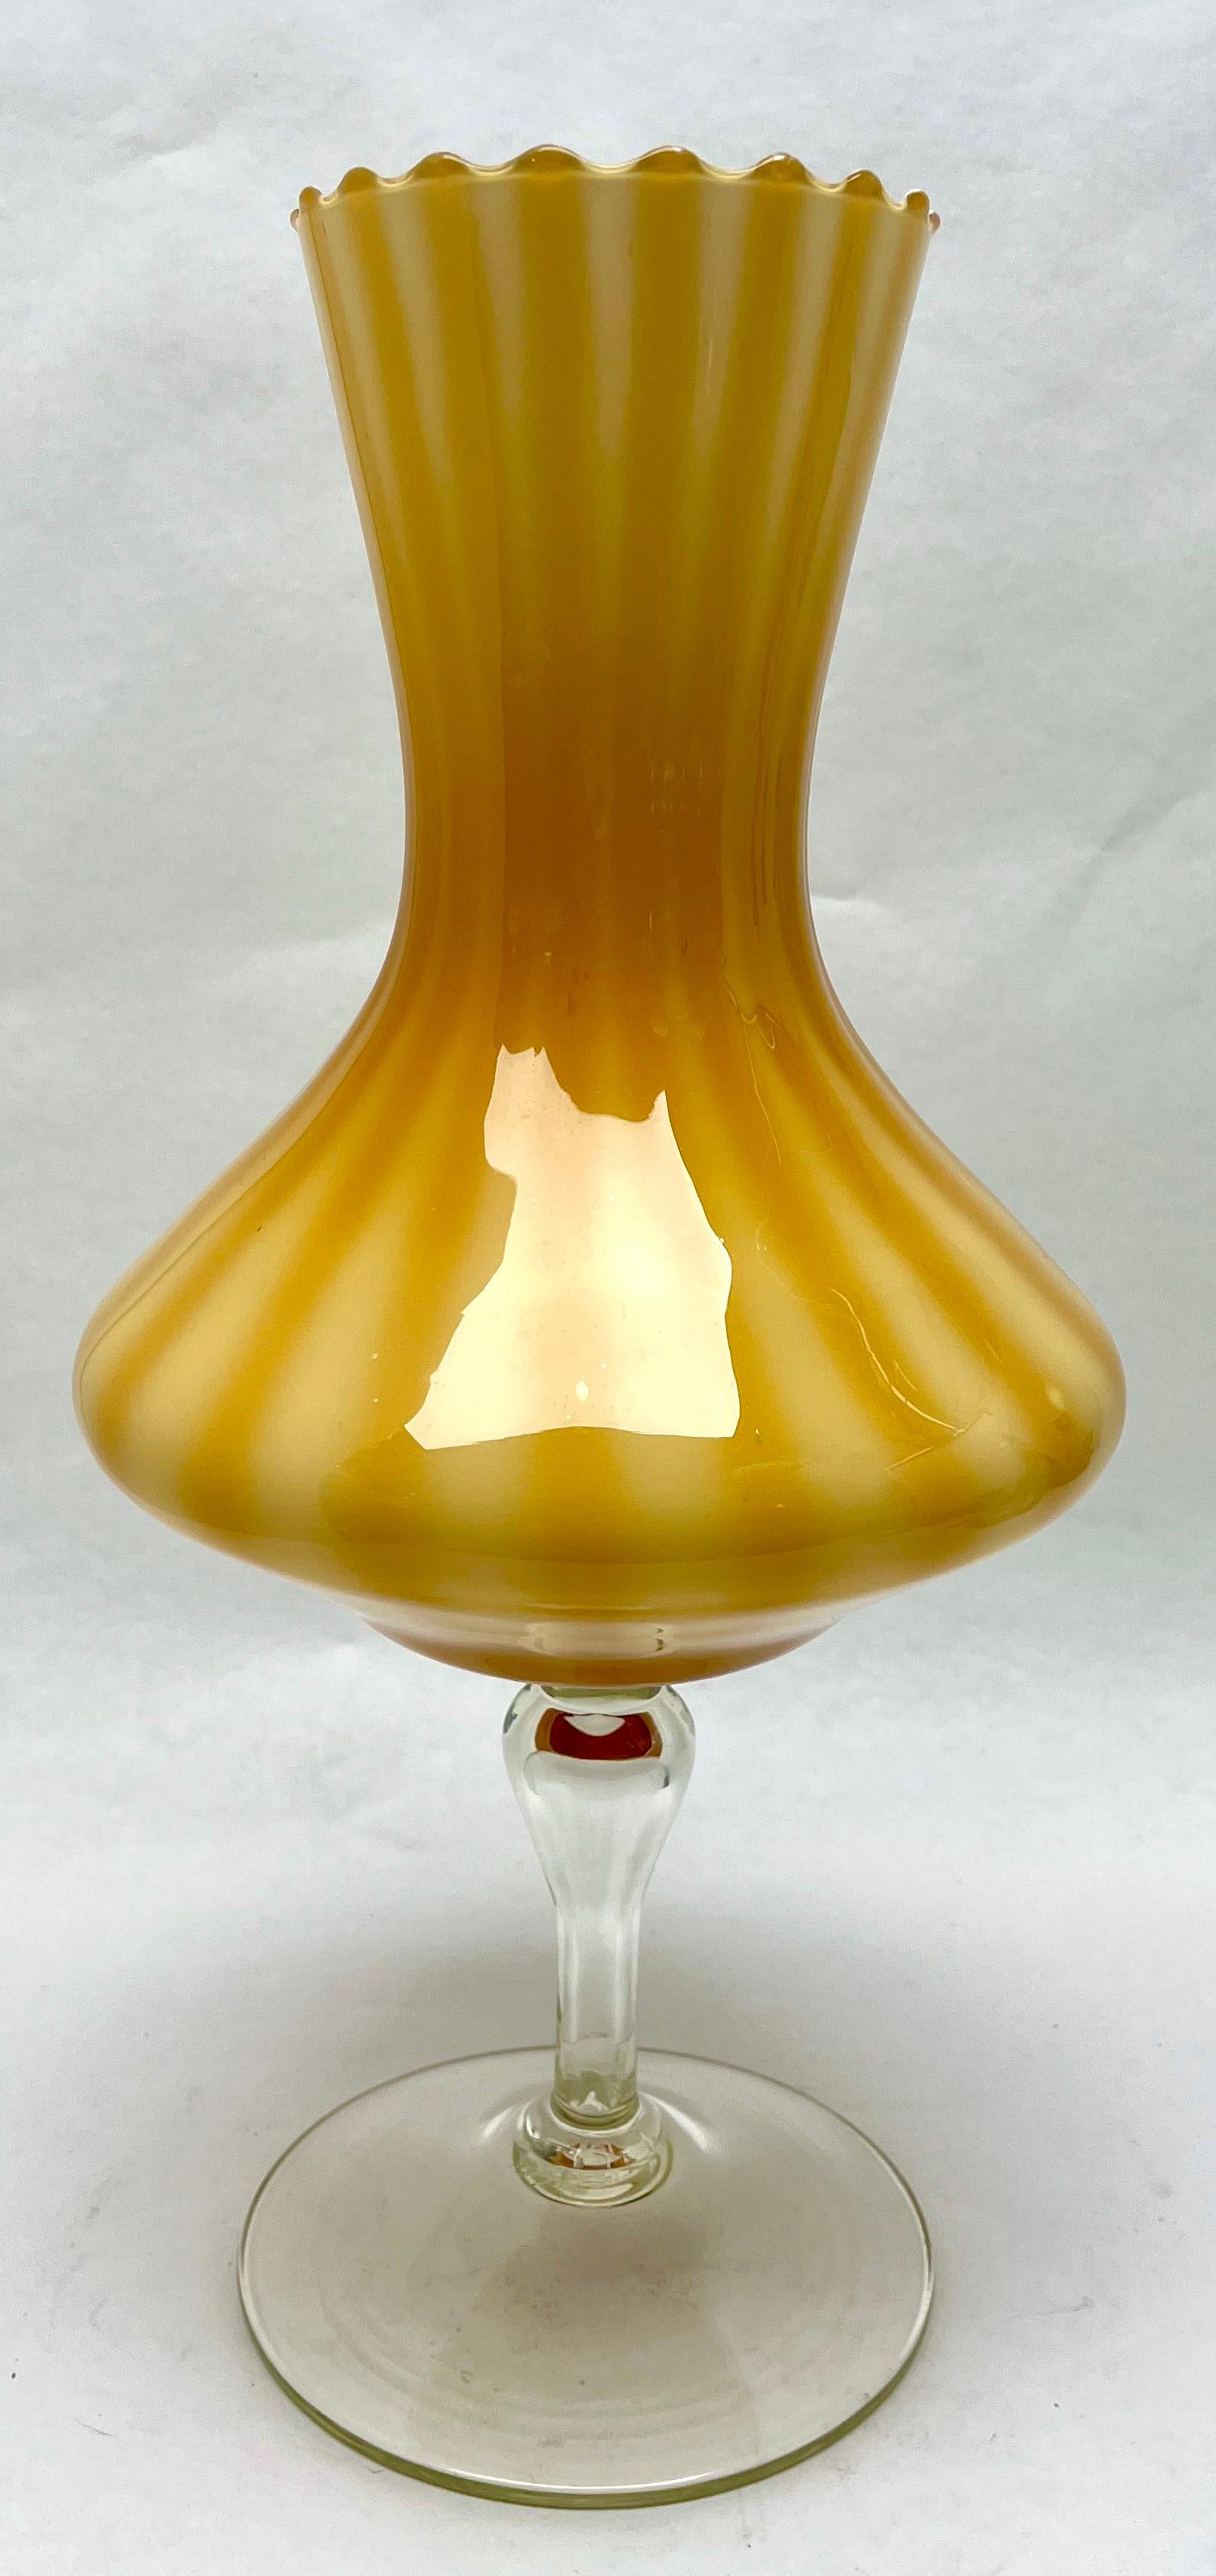 Opaline di Florence (Empoli) opalisierende italienische Kunstglasvase der späten 1950er oder frühen 1960er Jahre. 

Wunderschöner mundgeblasener Opal und handapplizierter weißer Fuß
Maße: 44 cm hoch, Durchmesser 18 cm
Das Stück ist in